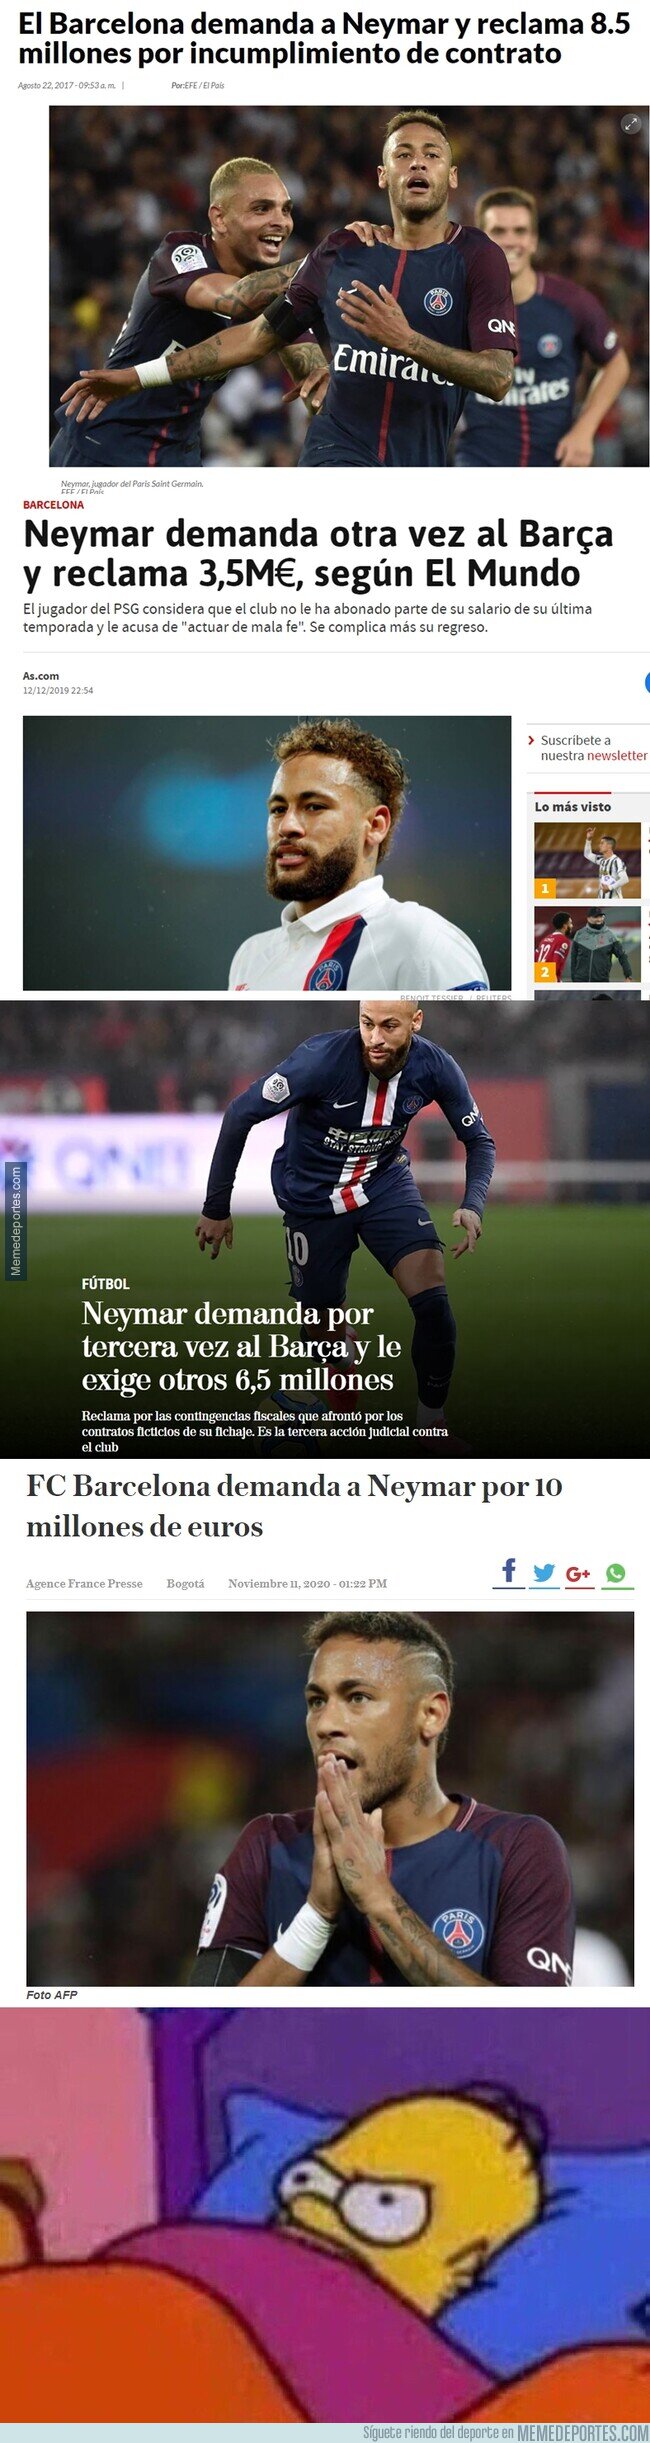 1120408 - Todas las demandas de Neymar al Barça. No se rinde el muchacho.